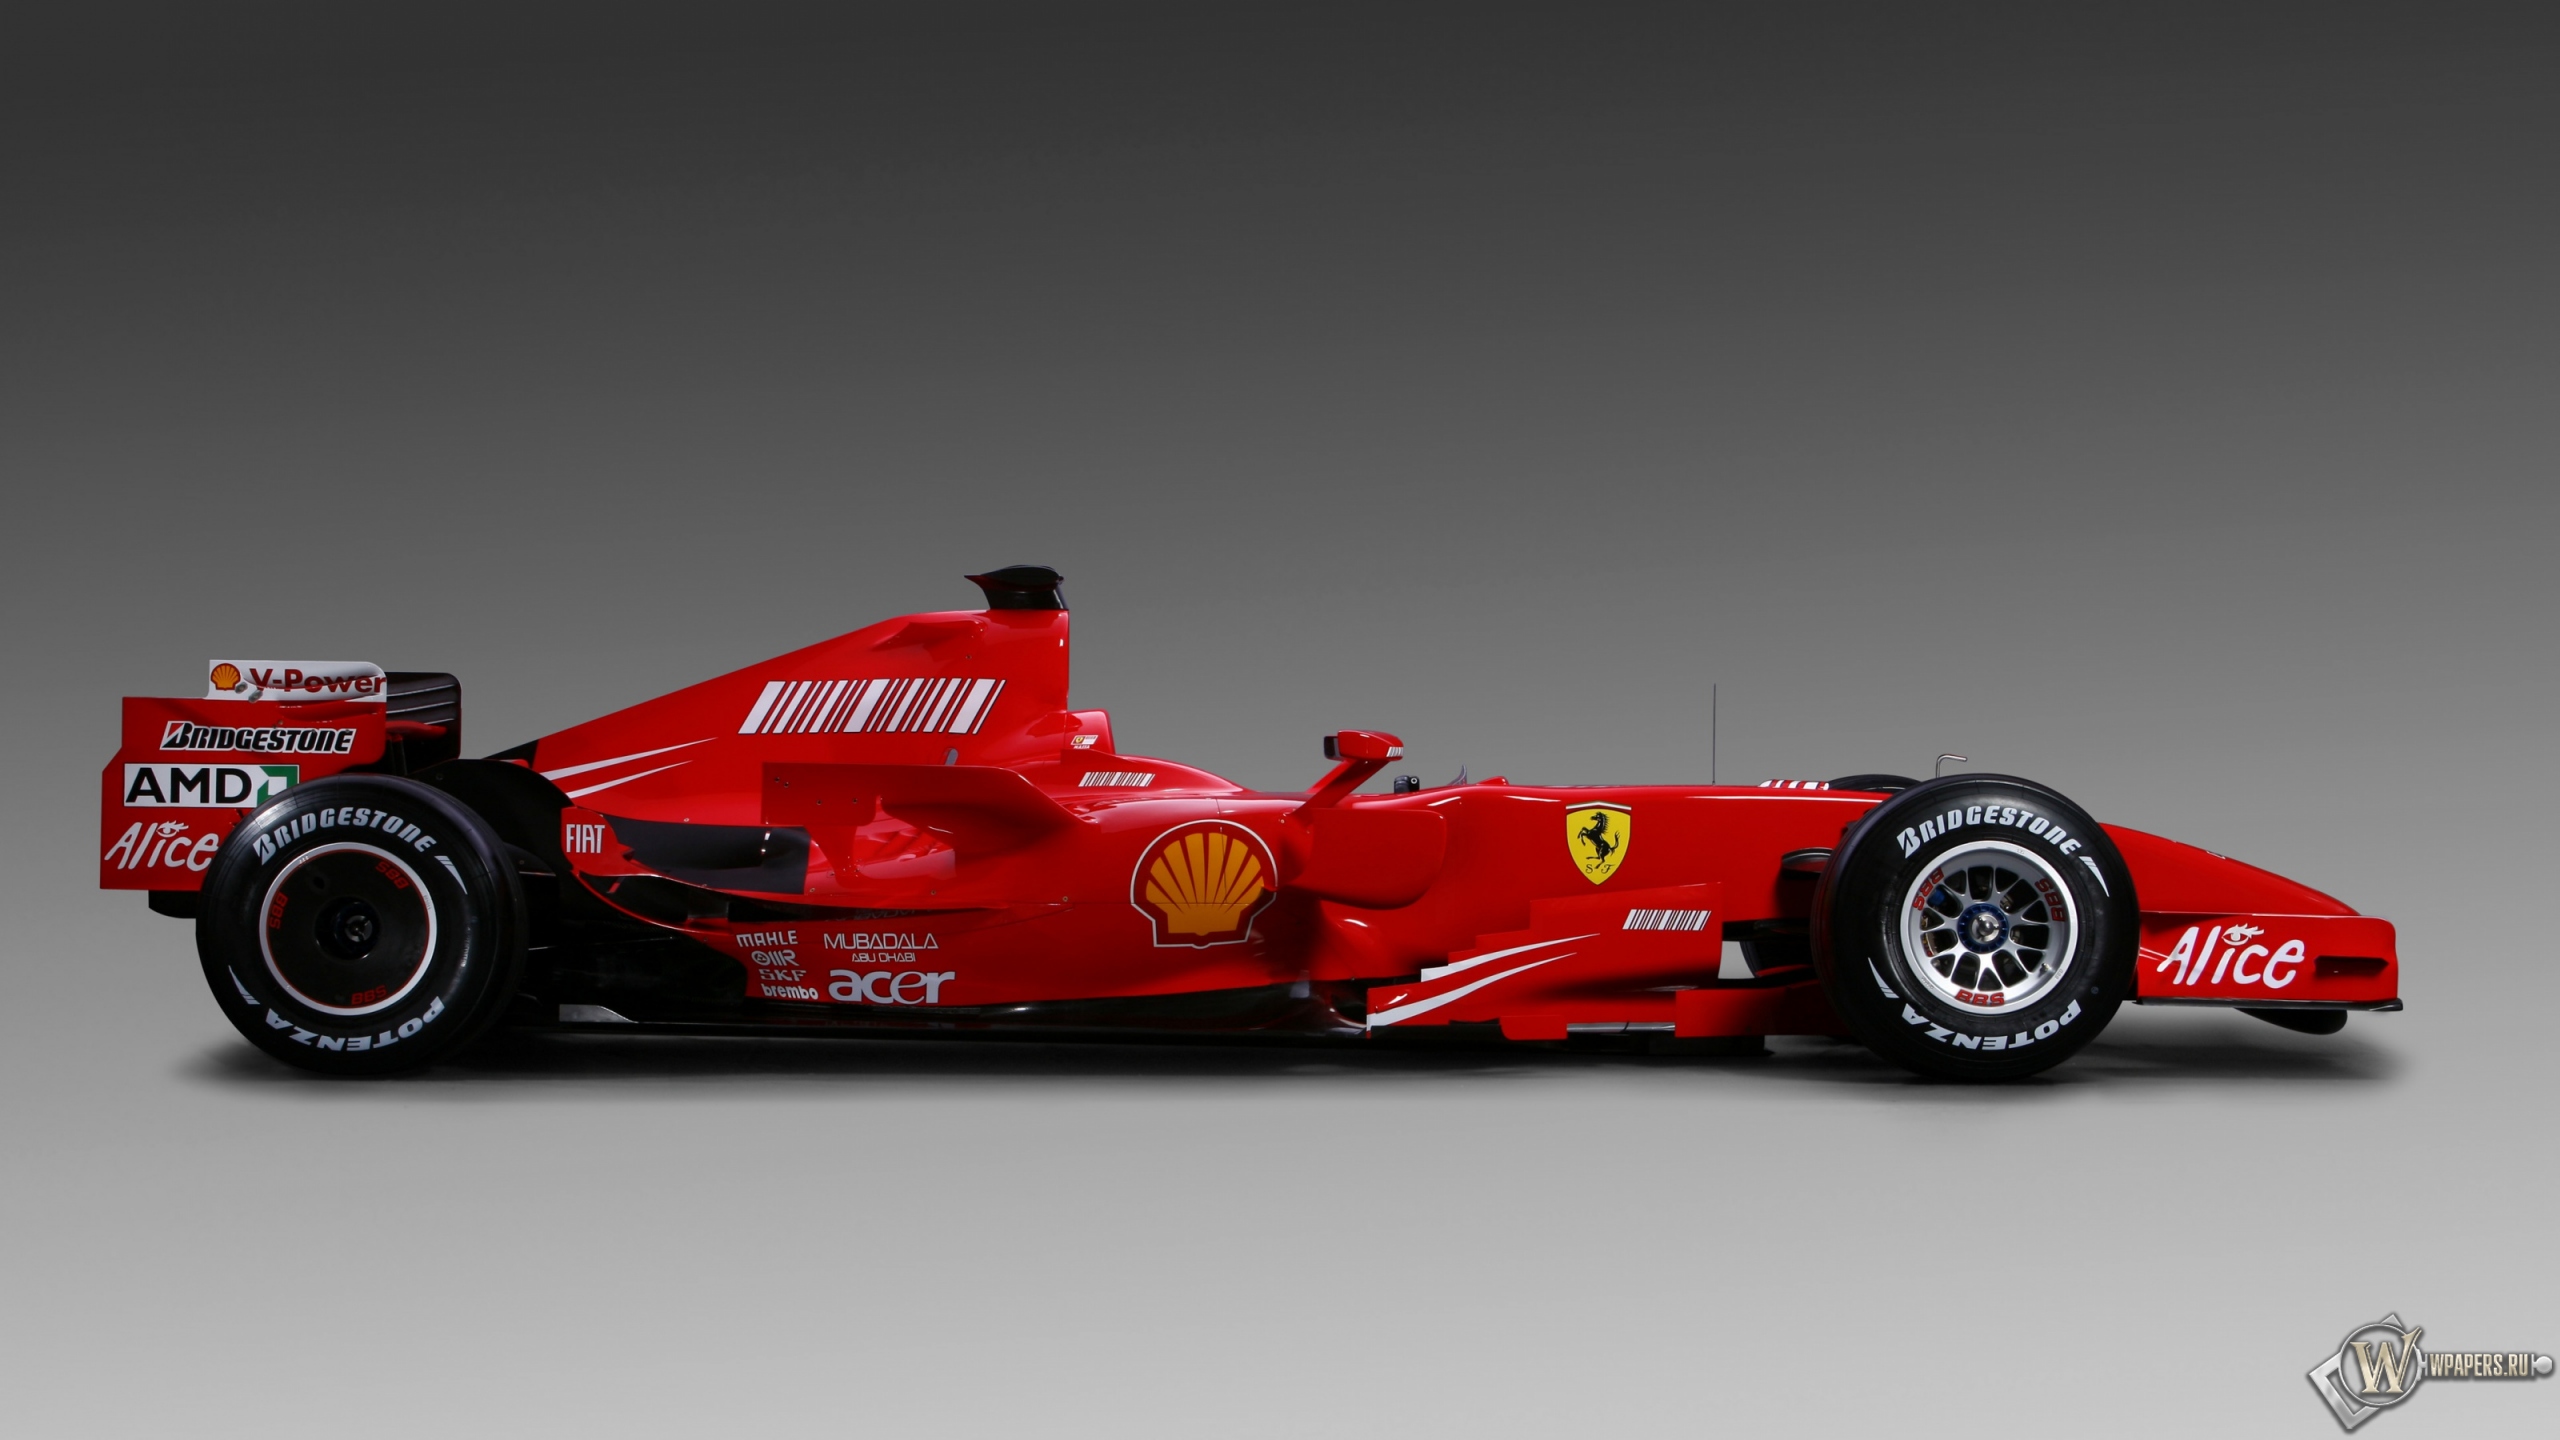 Tapeta: Ferrari F2007 2560x1440